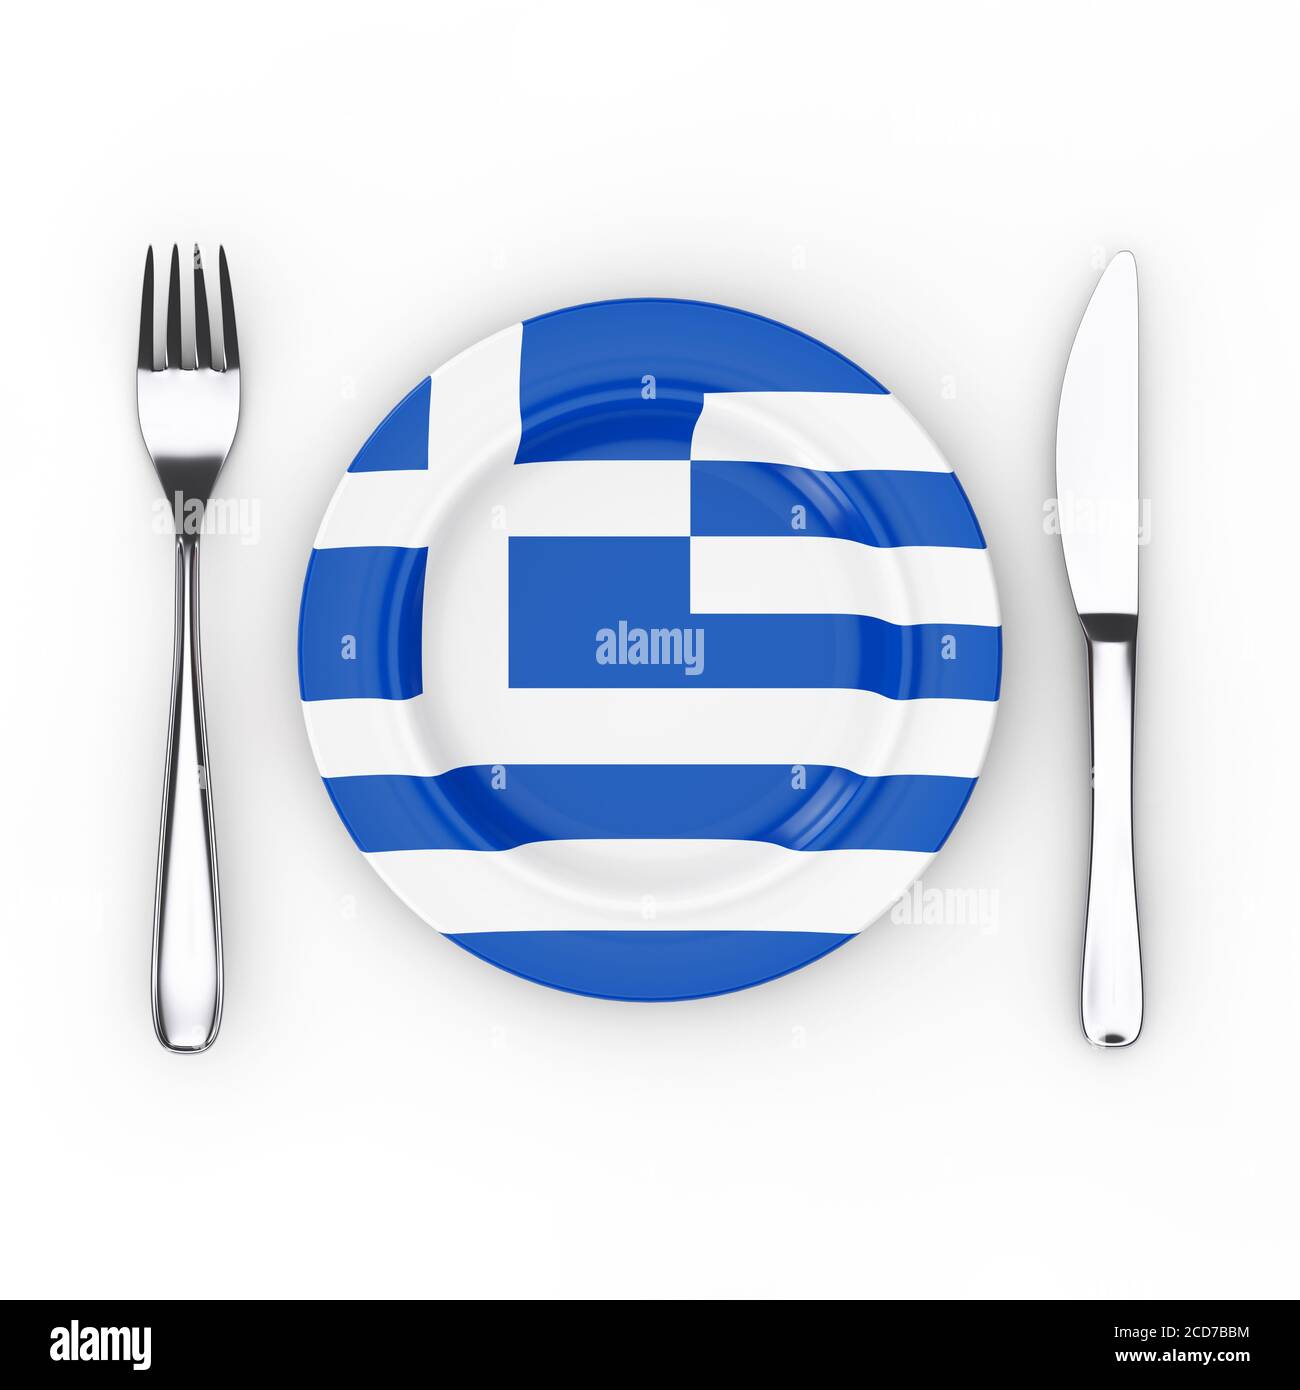 Griechisches Essen oder Kochkonzept. Gabel, Messer und Teller mit Griechenland Flagge auf weißem Hintergrund. 3d-Rendering Stockfoto